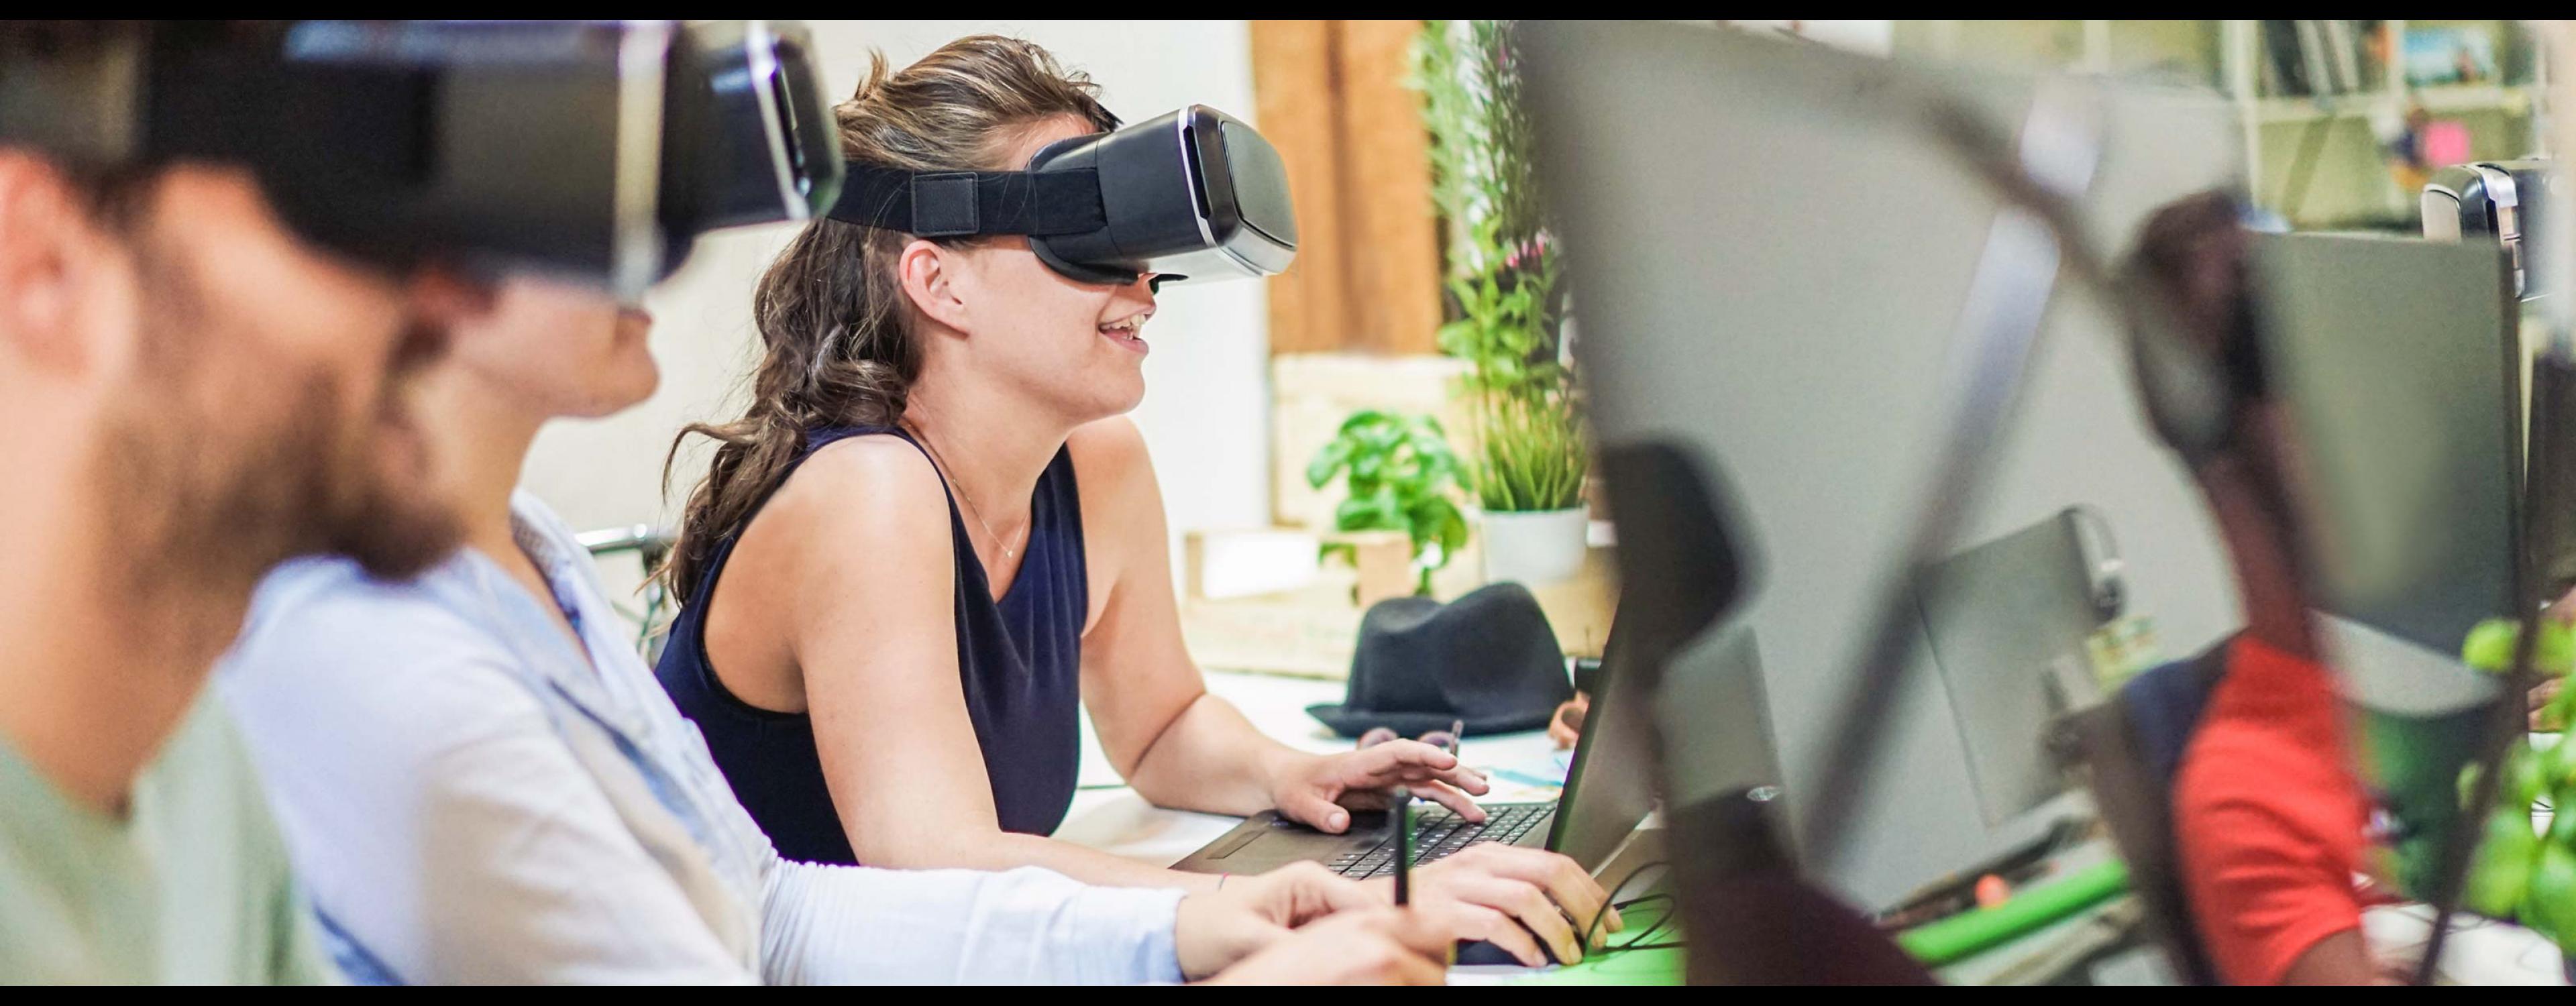 Drupal gagne en innovation avec la réalité virtuelle